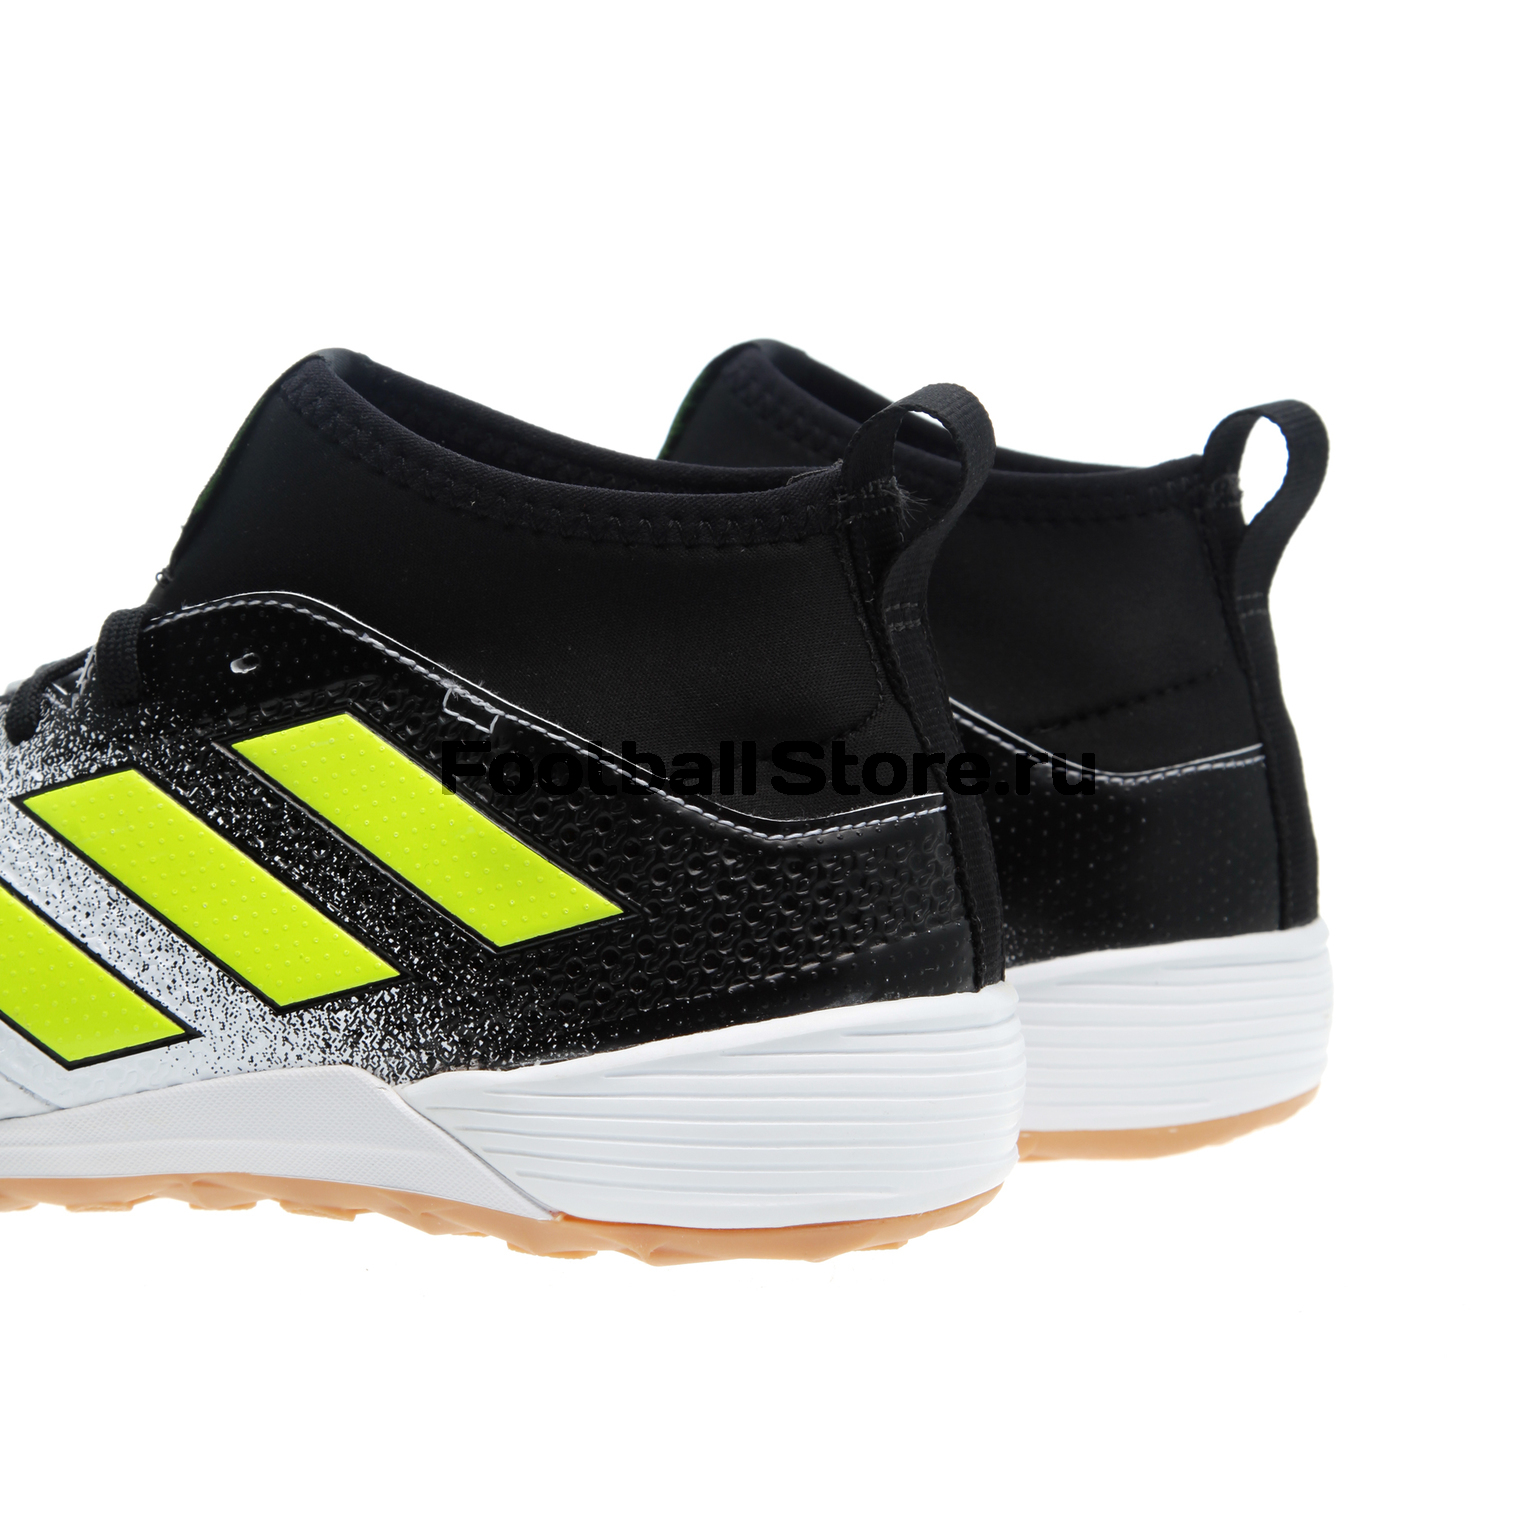 Обувь для зала Adidas Ace Tango 17.3 IN CG3707